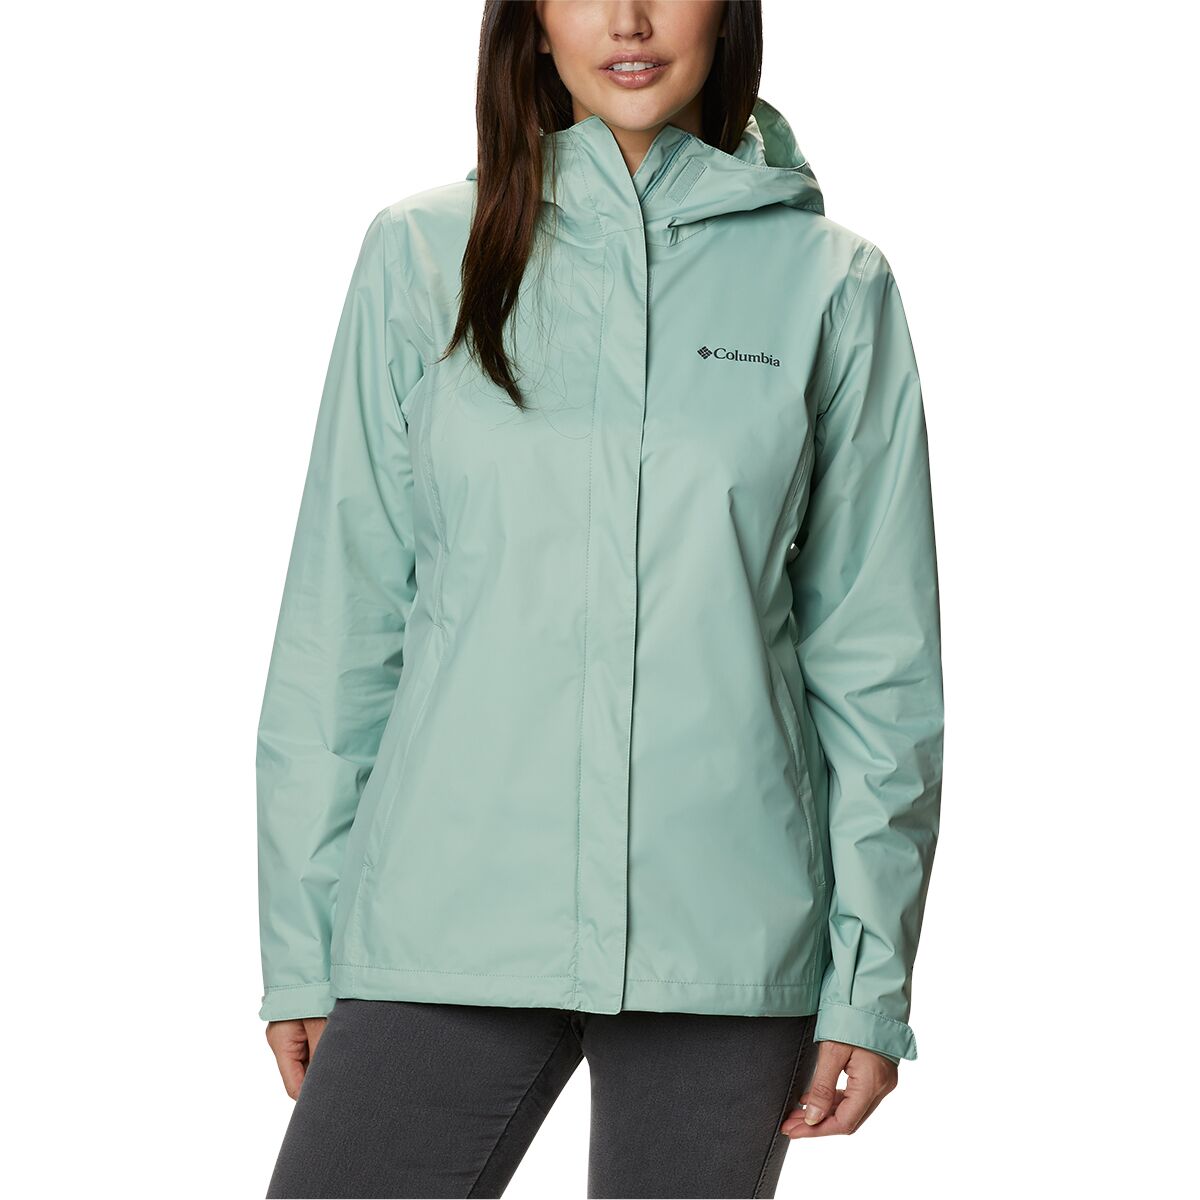 Columbia Arcadia II Plus Rain Jacket - Women's - Clothing